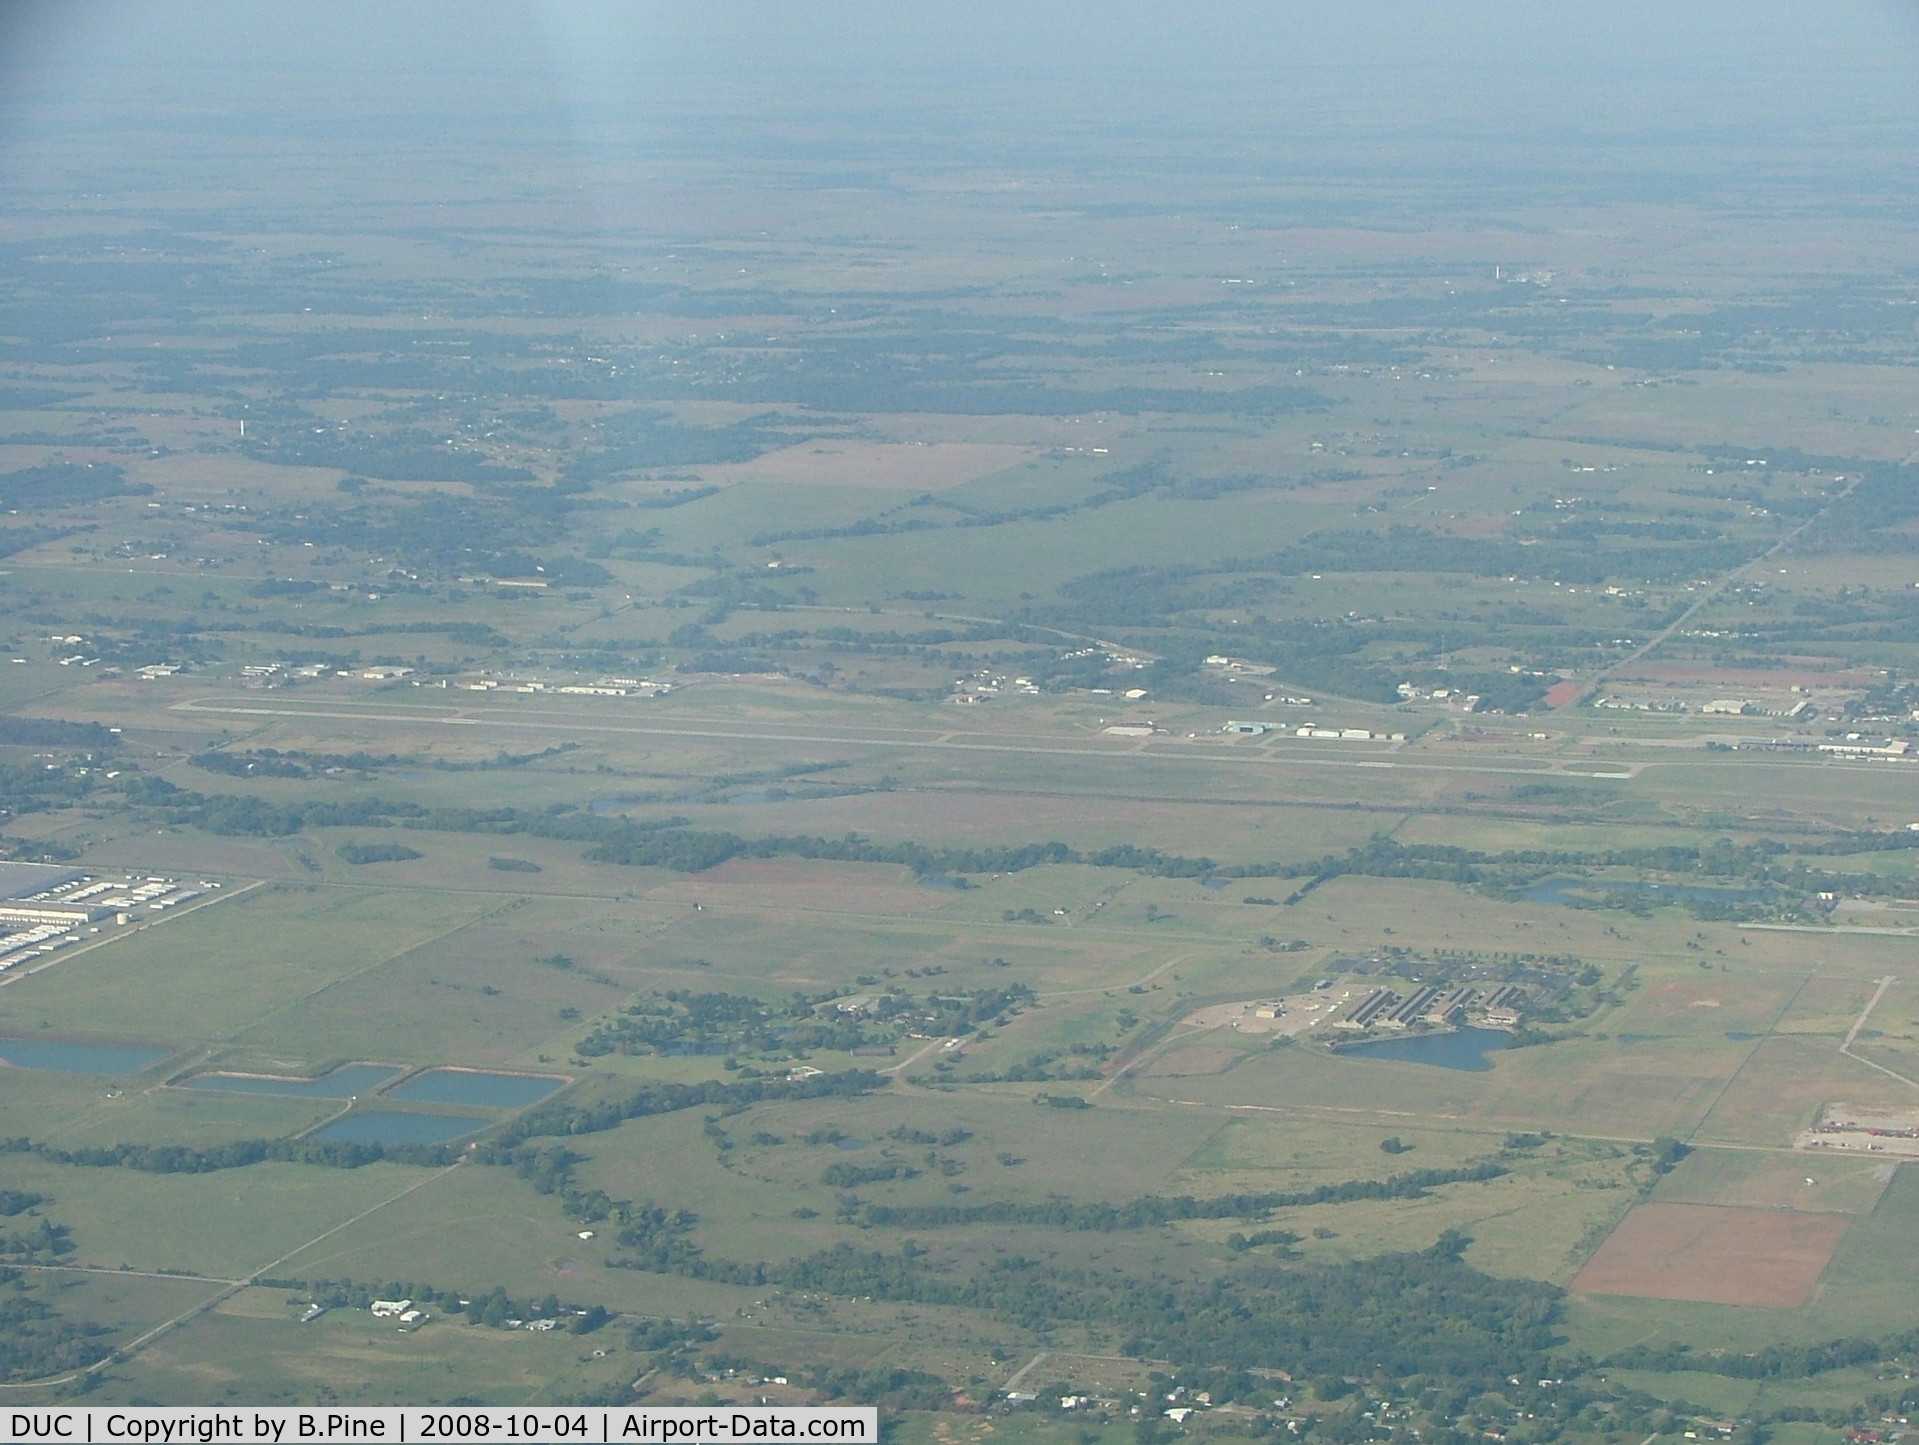 Halliburton Field Airport (DUC) - Duncan - Halliburton Airport looking West